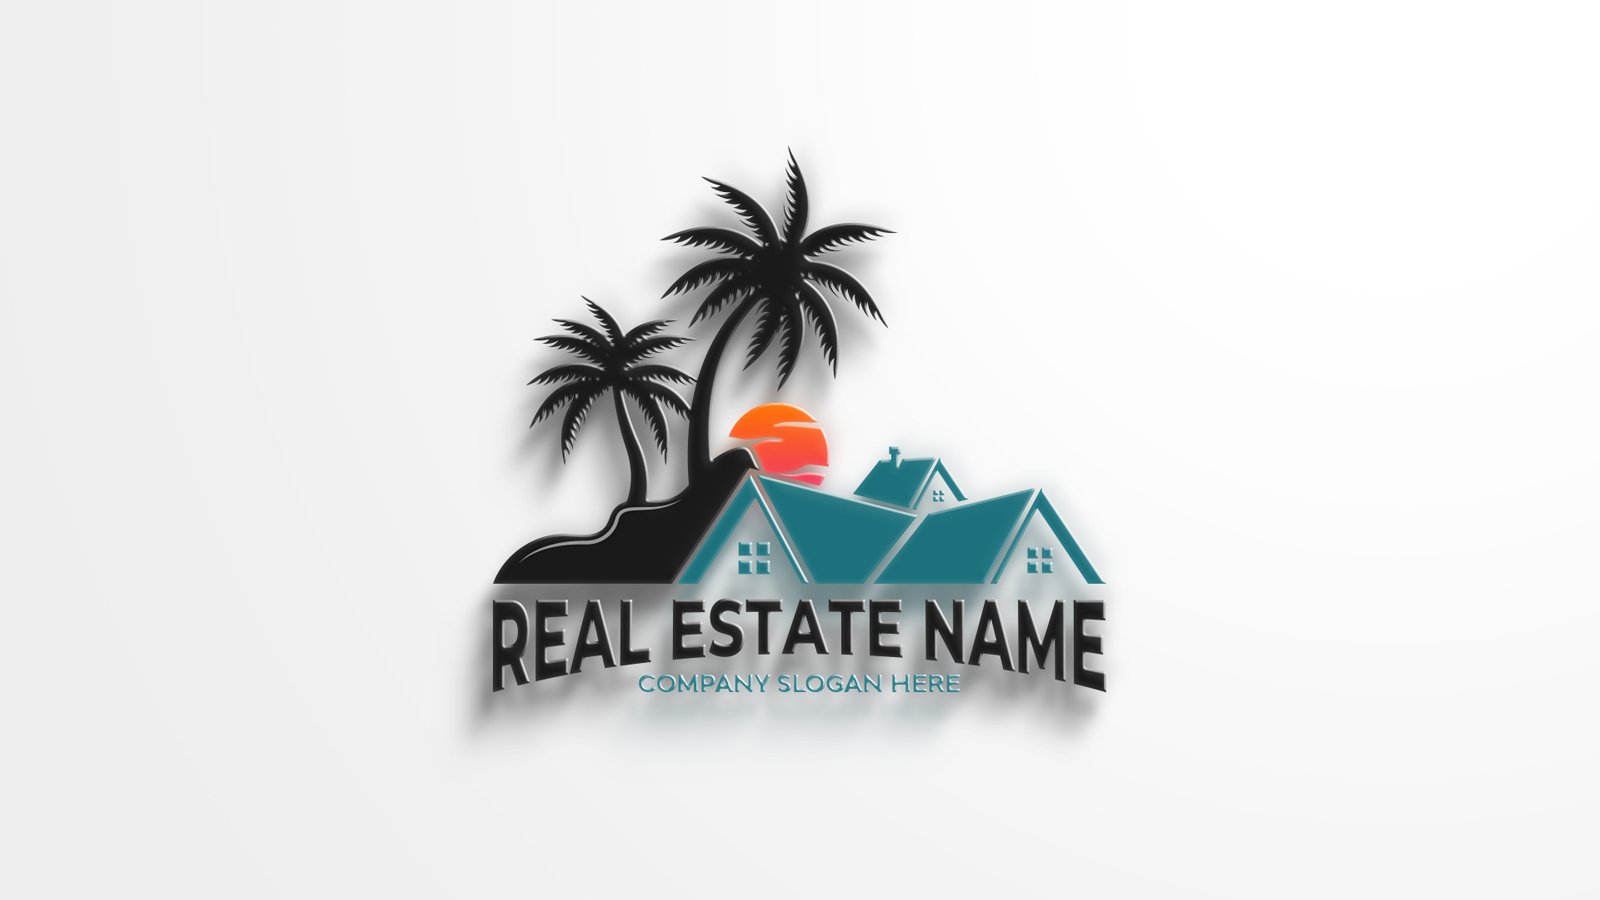 Kit Graphique #363481 Real Estate Divers Modles Web - Logo template Preview